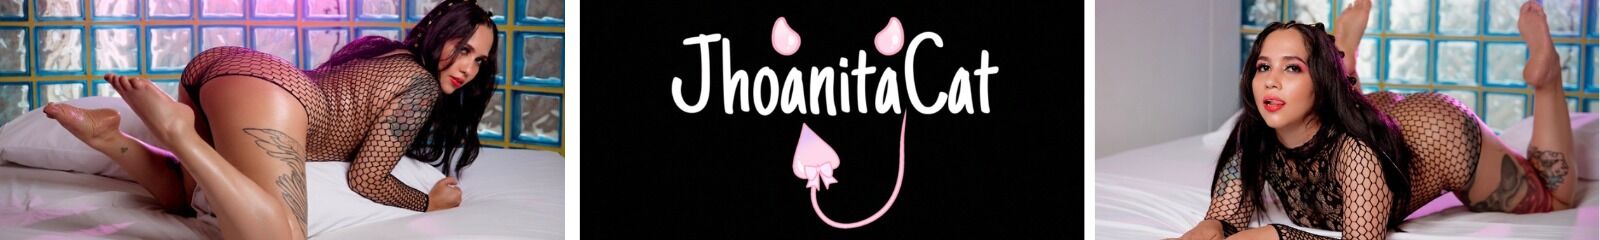 Jhoanita Cat